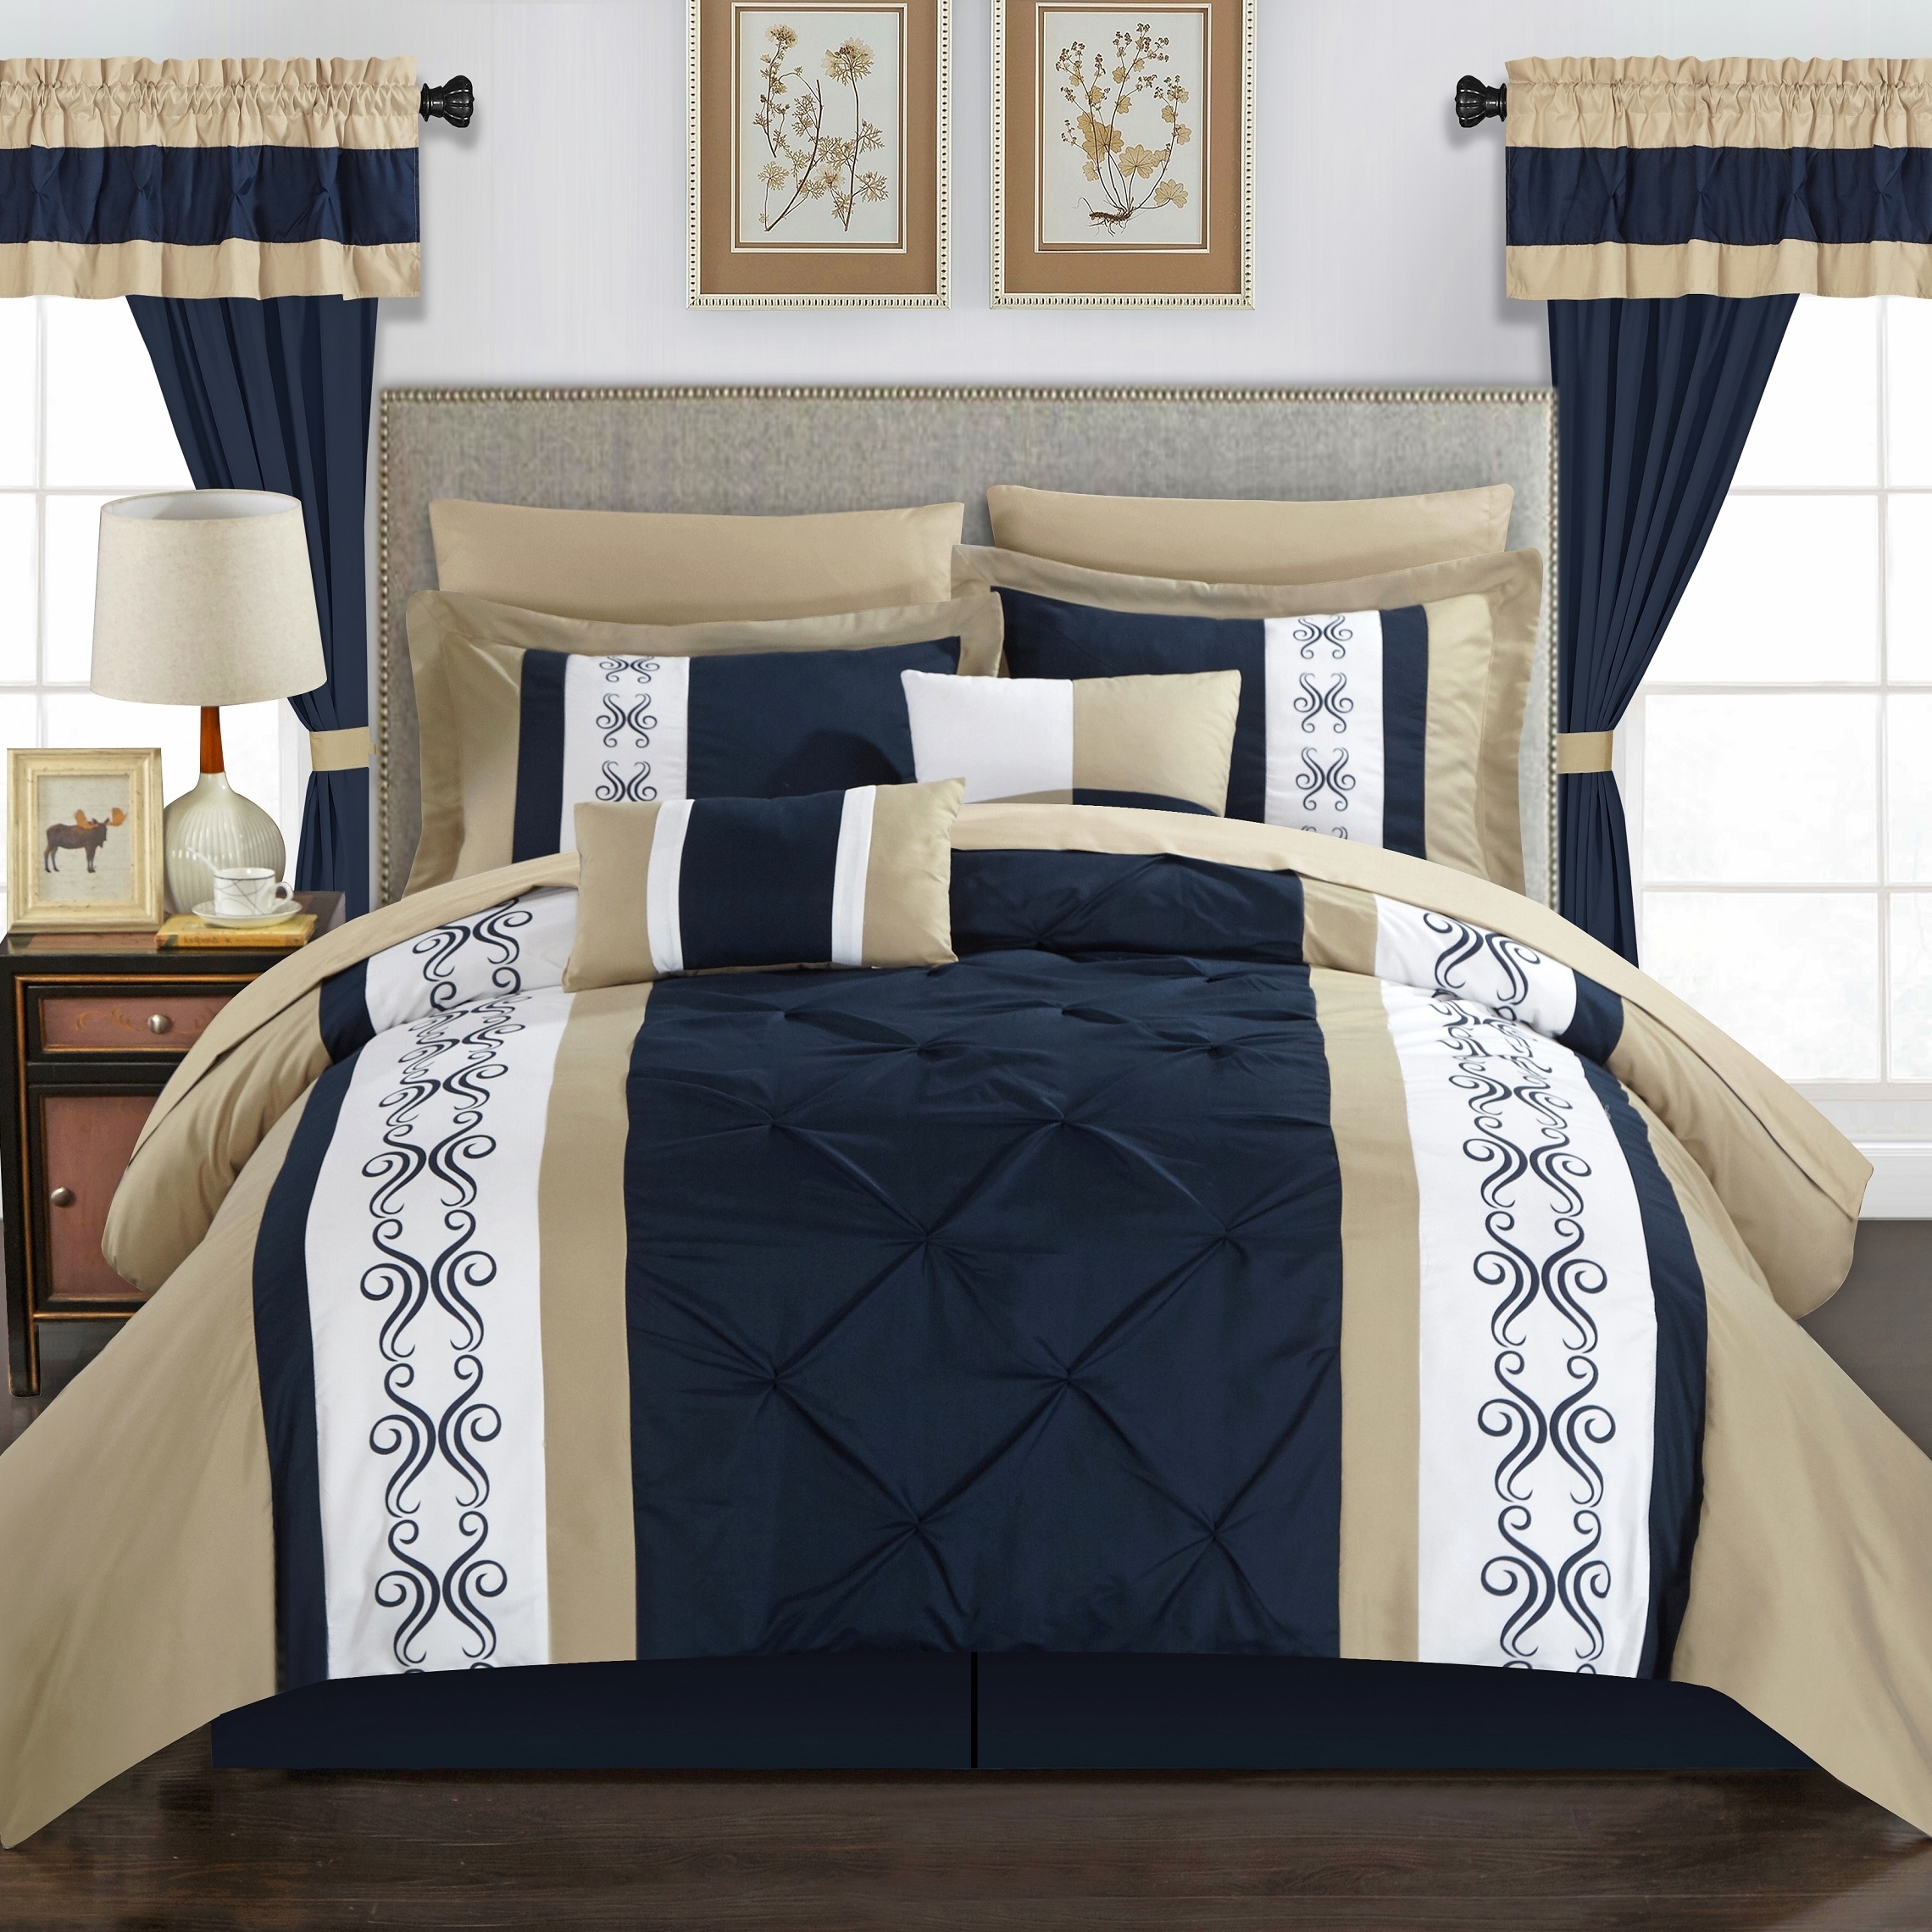 Adara 20 Piece Comforter Set Color Block Pinch Pleat Pintuck Design - Black, Queen